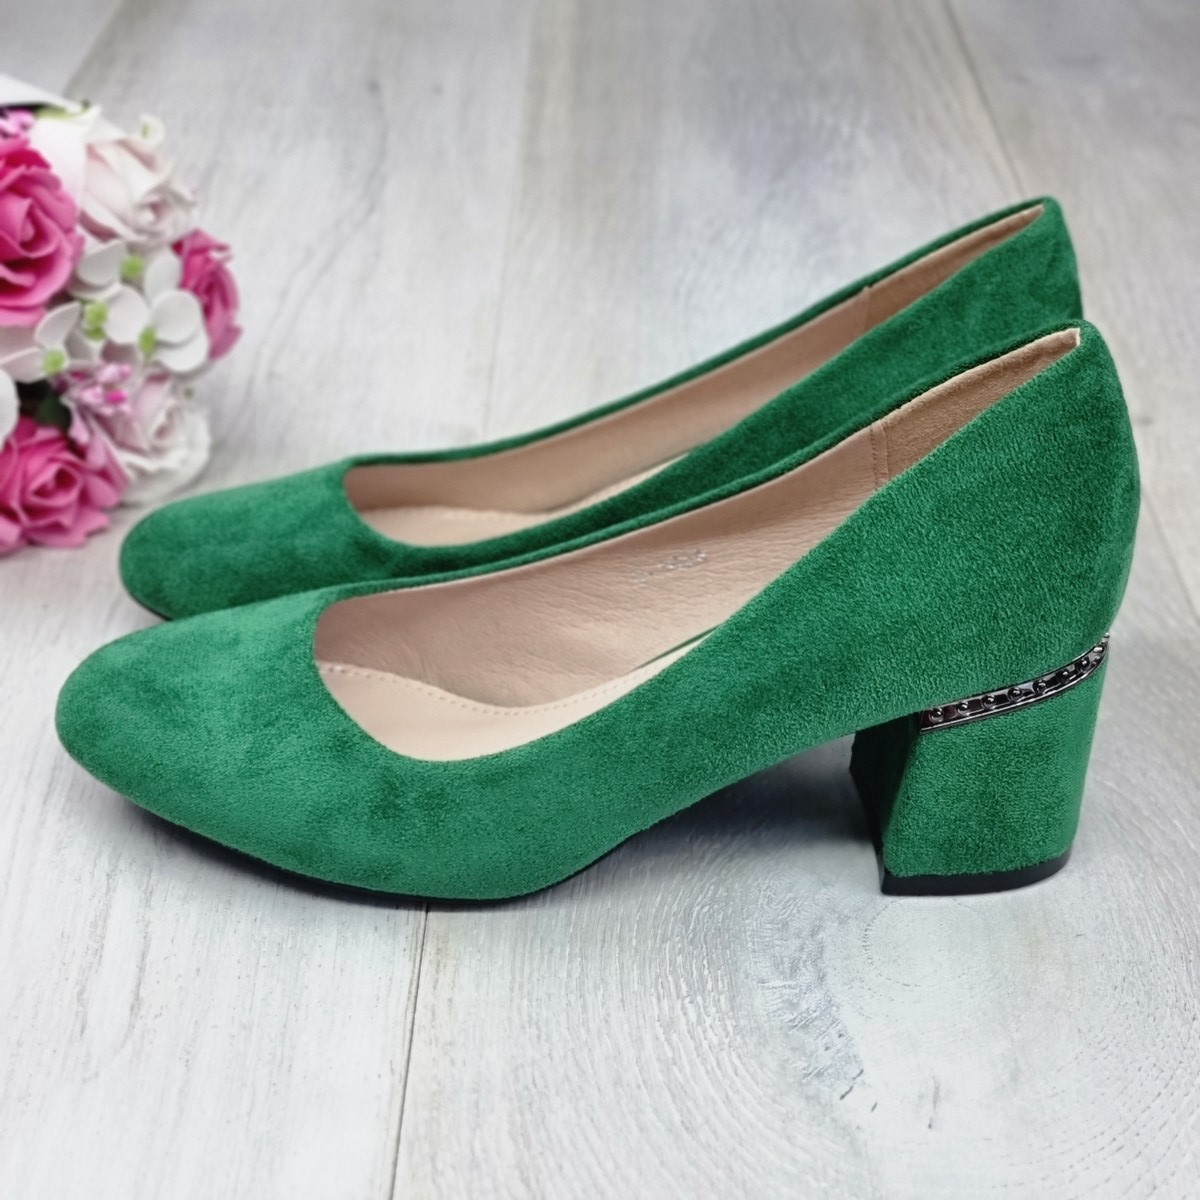 Pantofi damă verzi cu toc domini